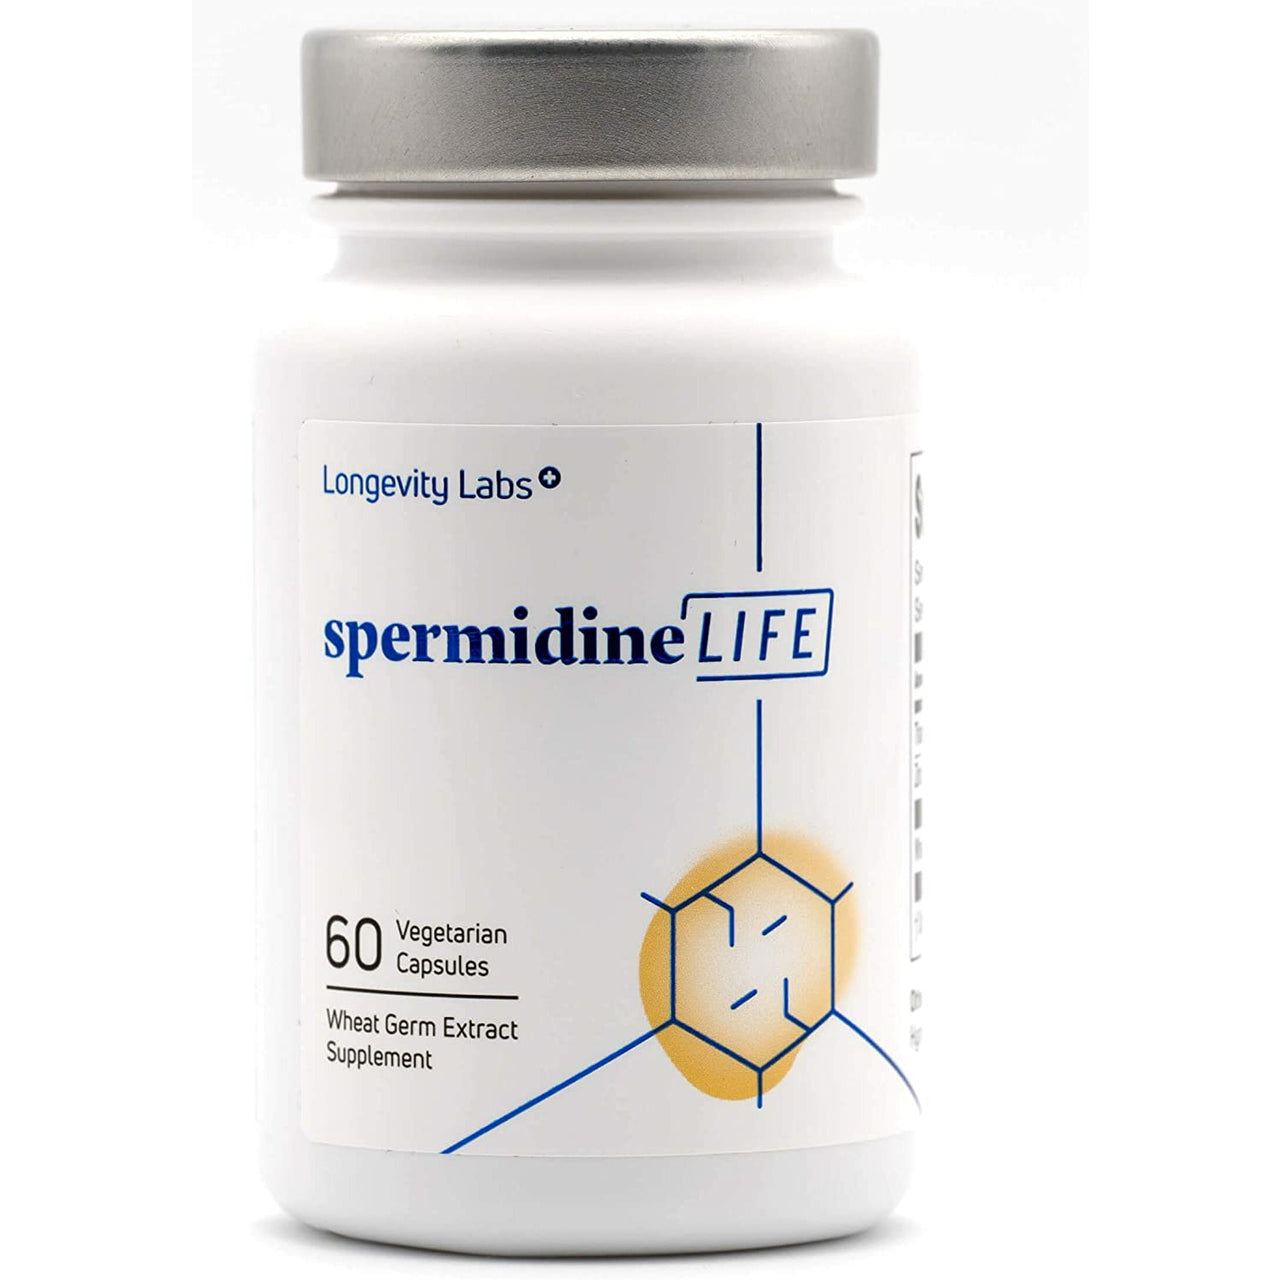 Spermidine Life Original 365+ | Contains Lab Verified Spermidine Rich Wheat Germ Extract